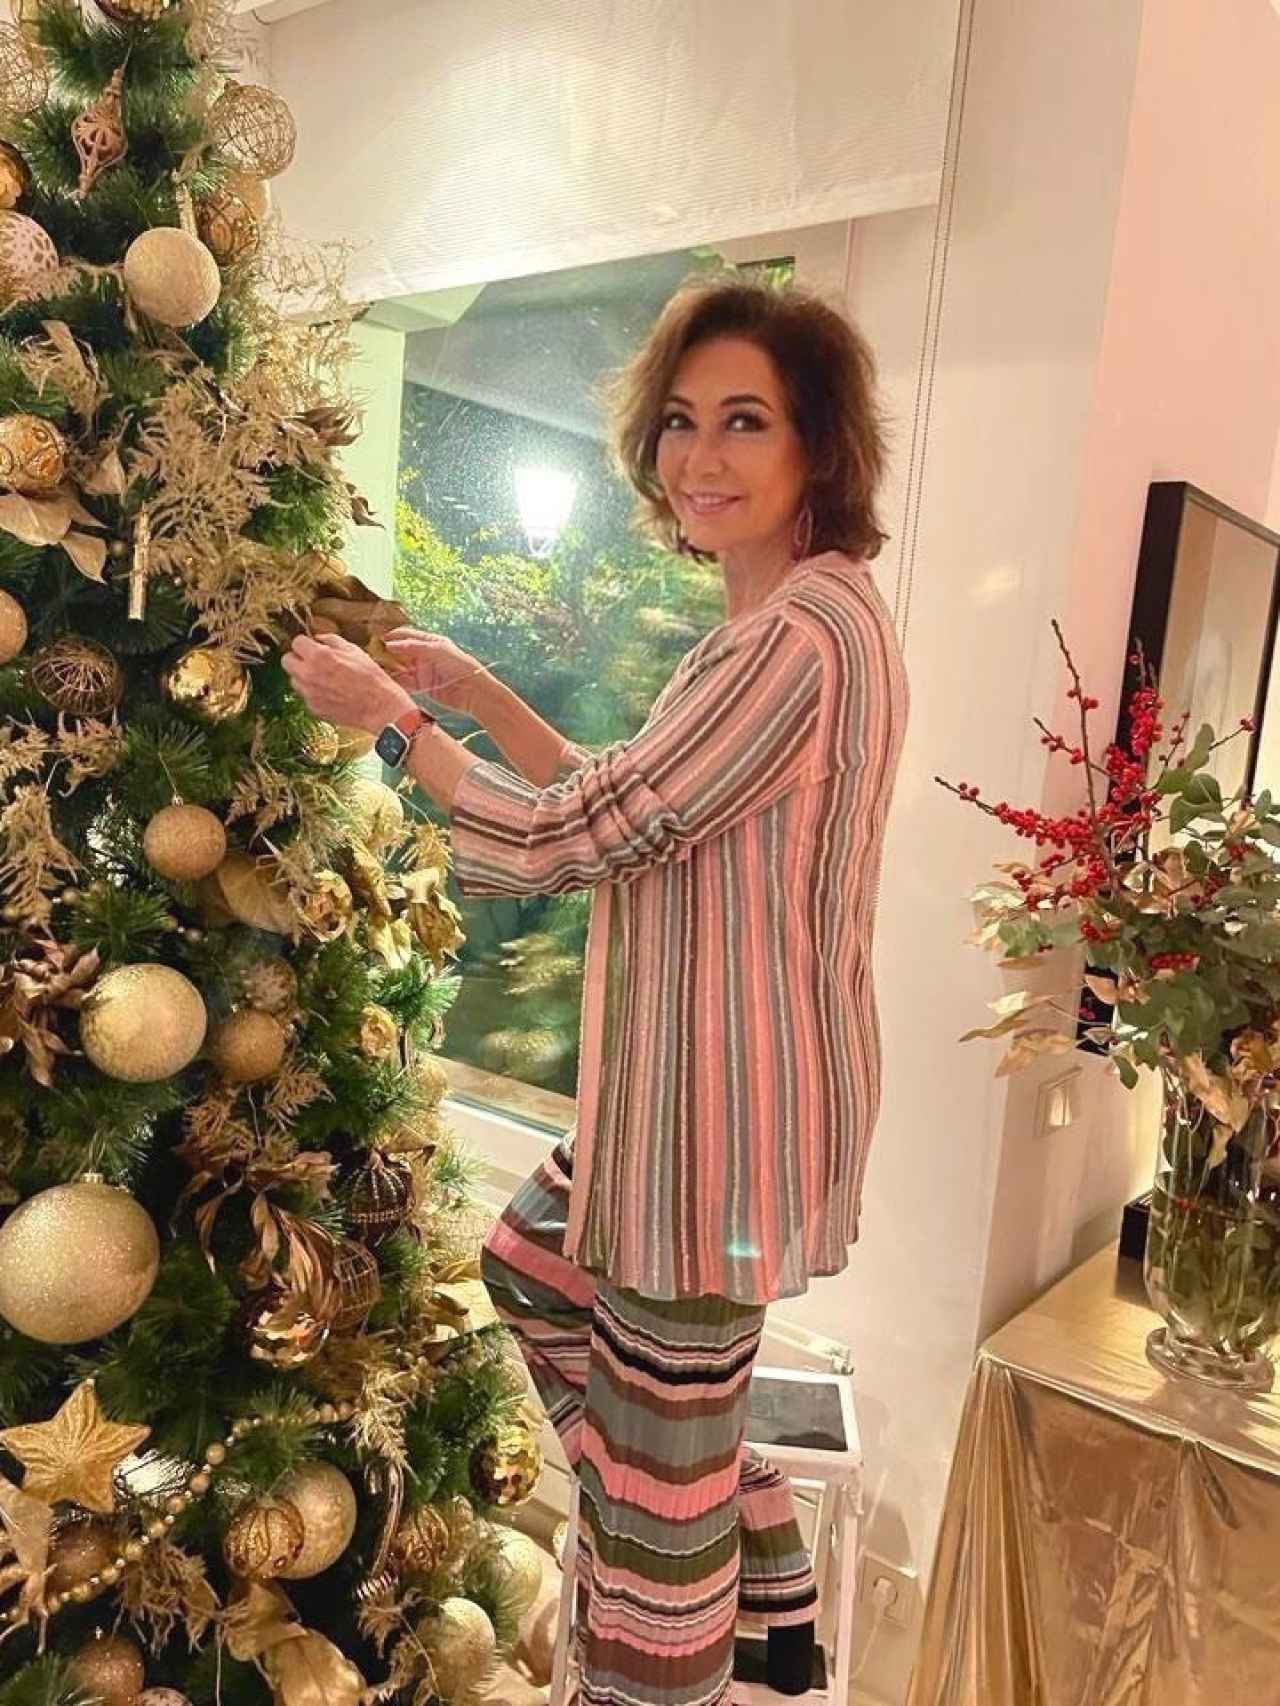 Ana Rosa reapareció en el día de Navidad mostrando cómo decoraba el árbol.